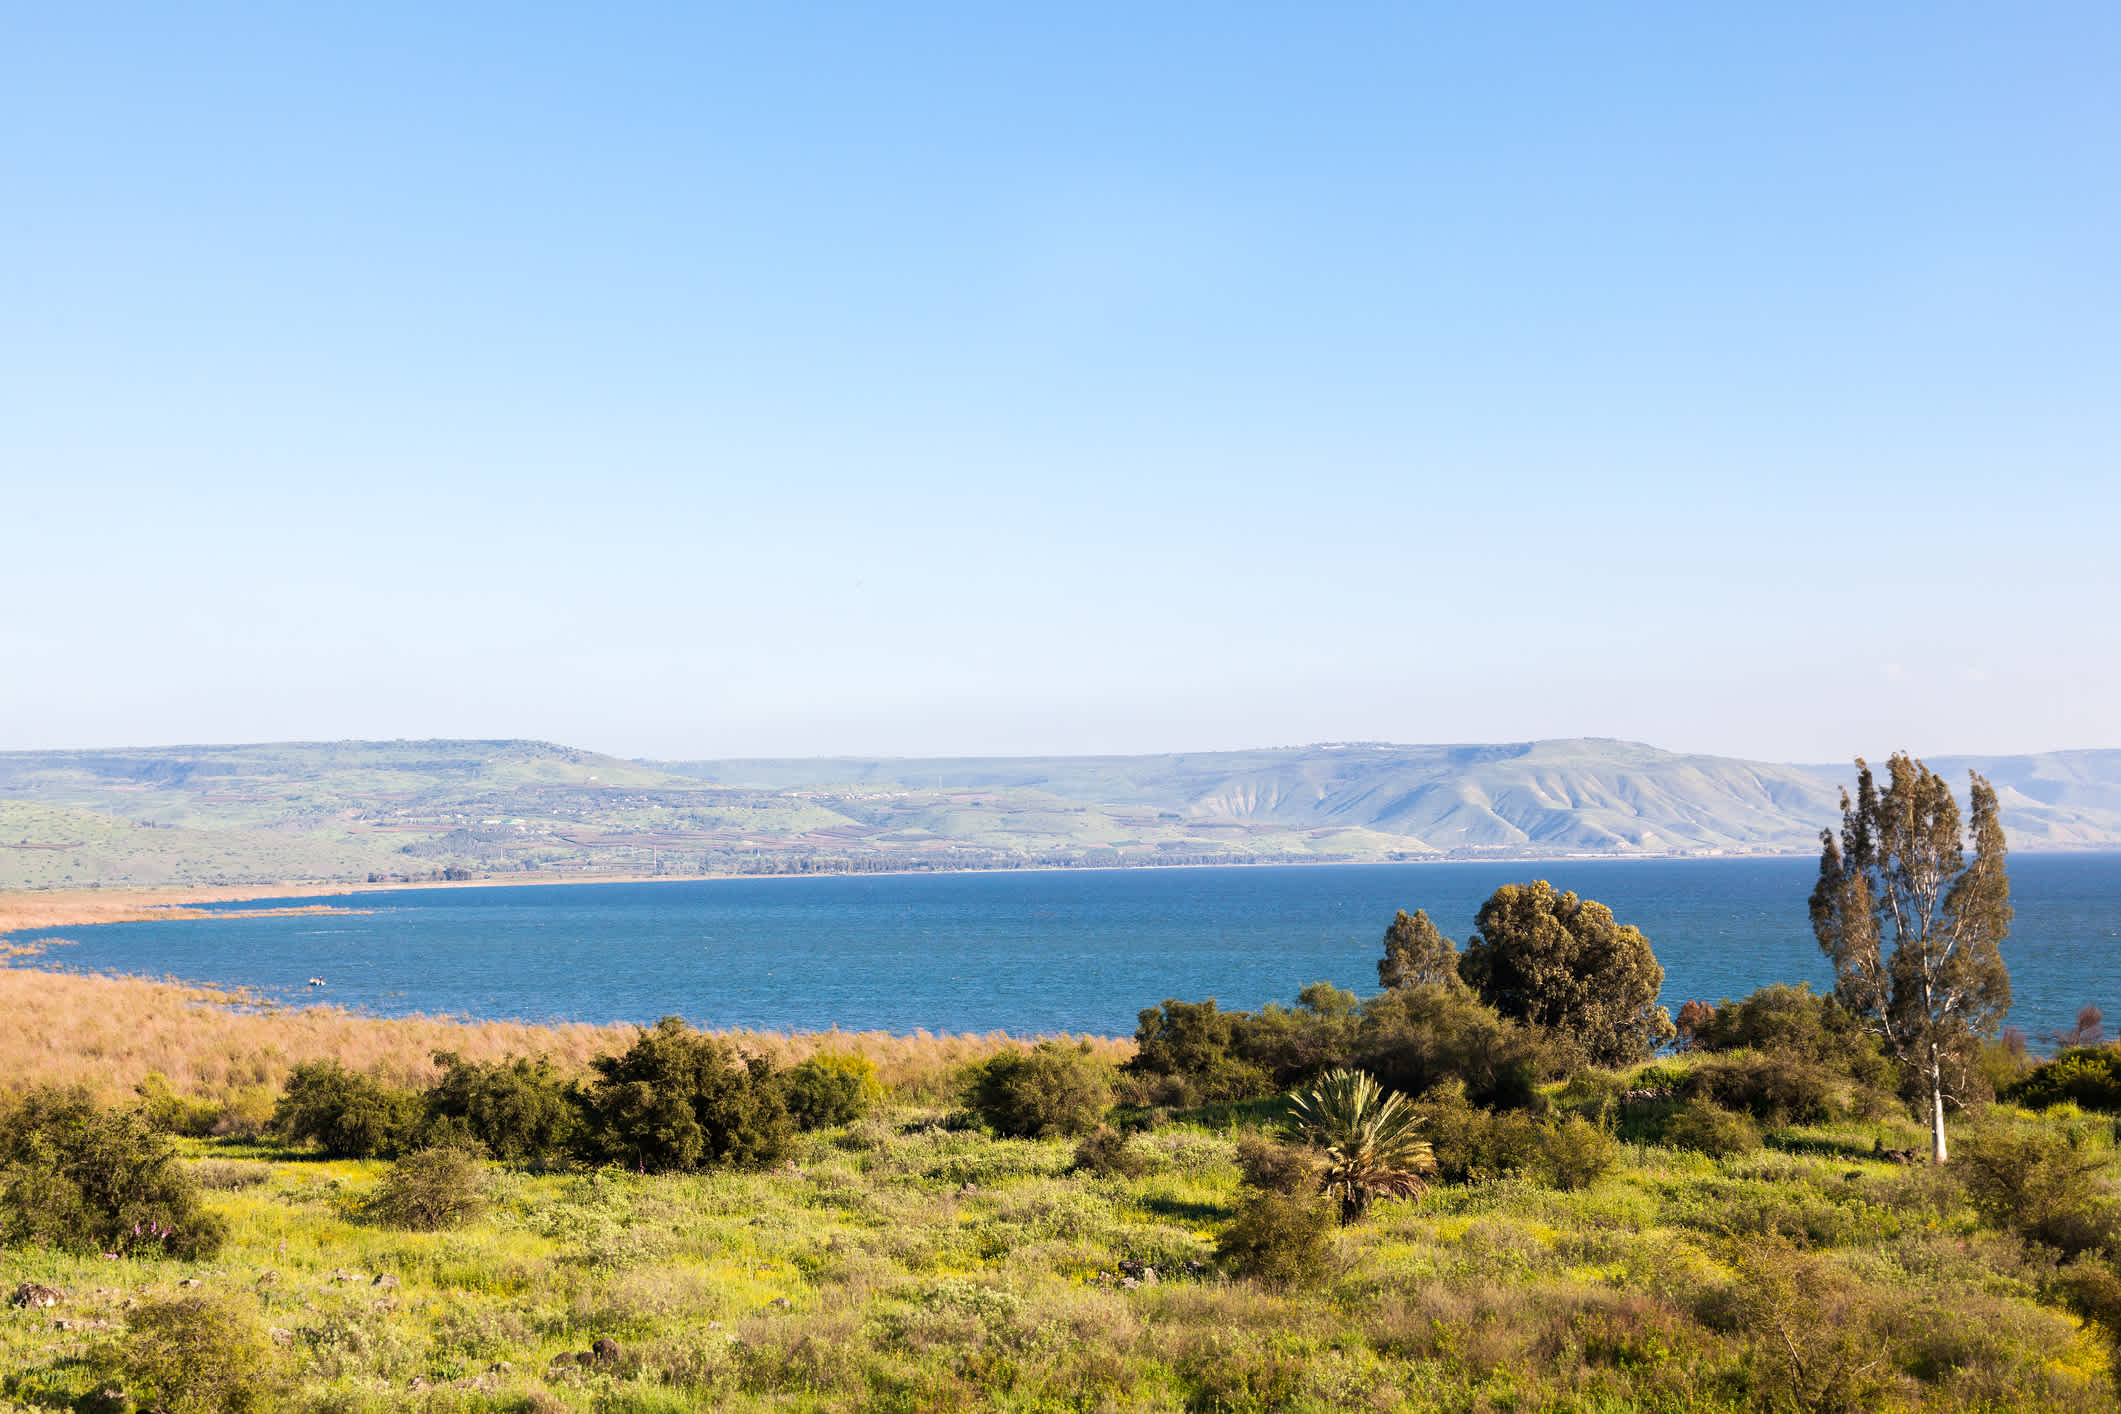 Der See Genezareth auch bekannt als Galiläisches Meer ist bekannt aus biblischen Geschichten und noch heute eine einmalige Sehenswürdigkeit in Israel.  